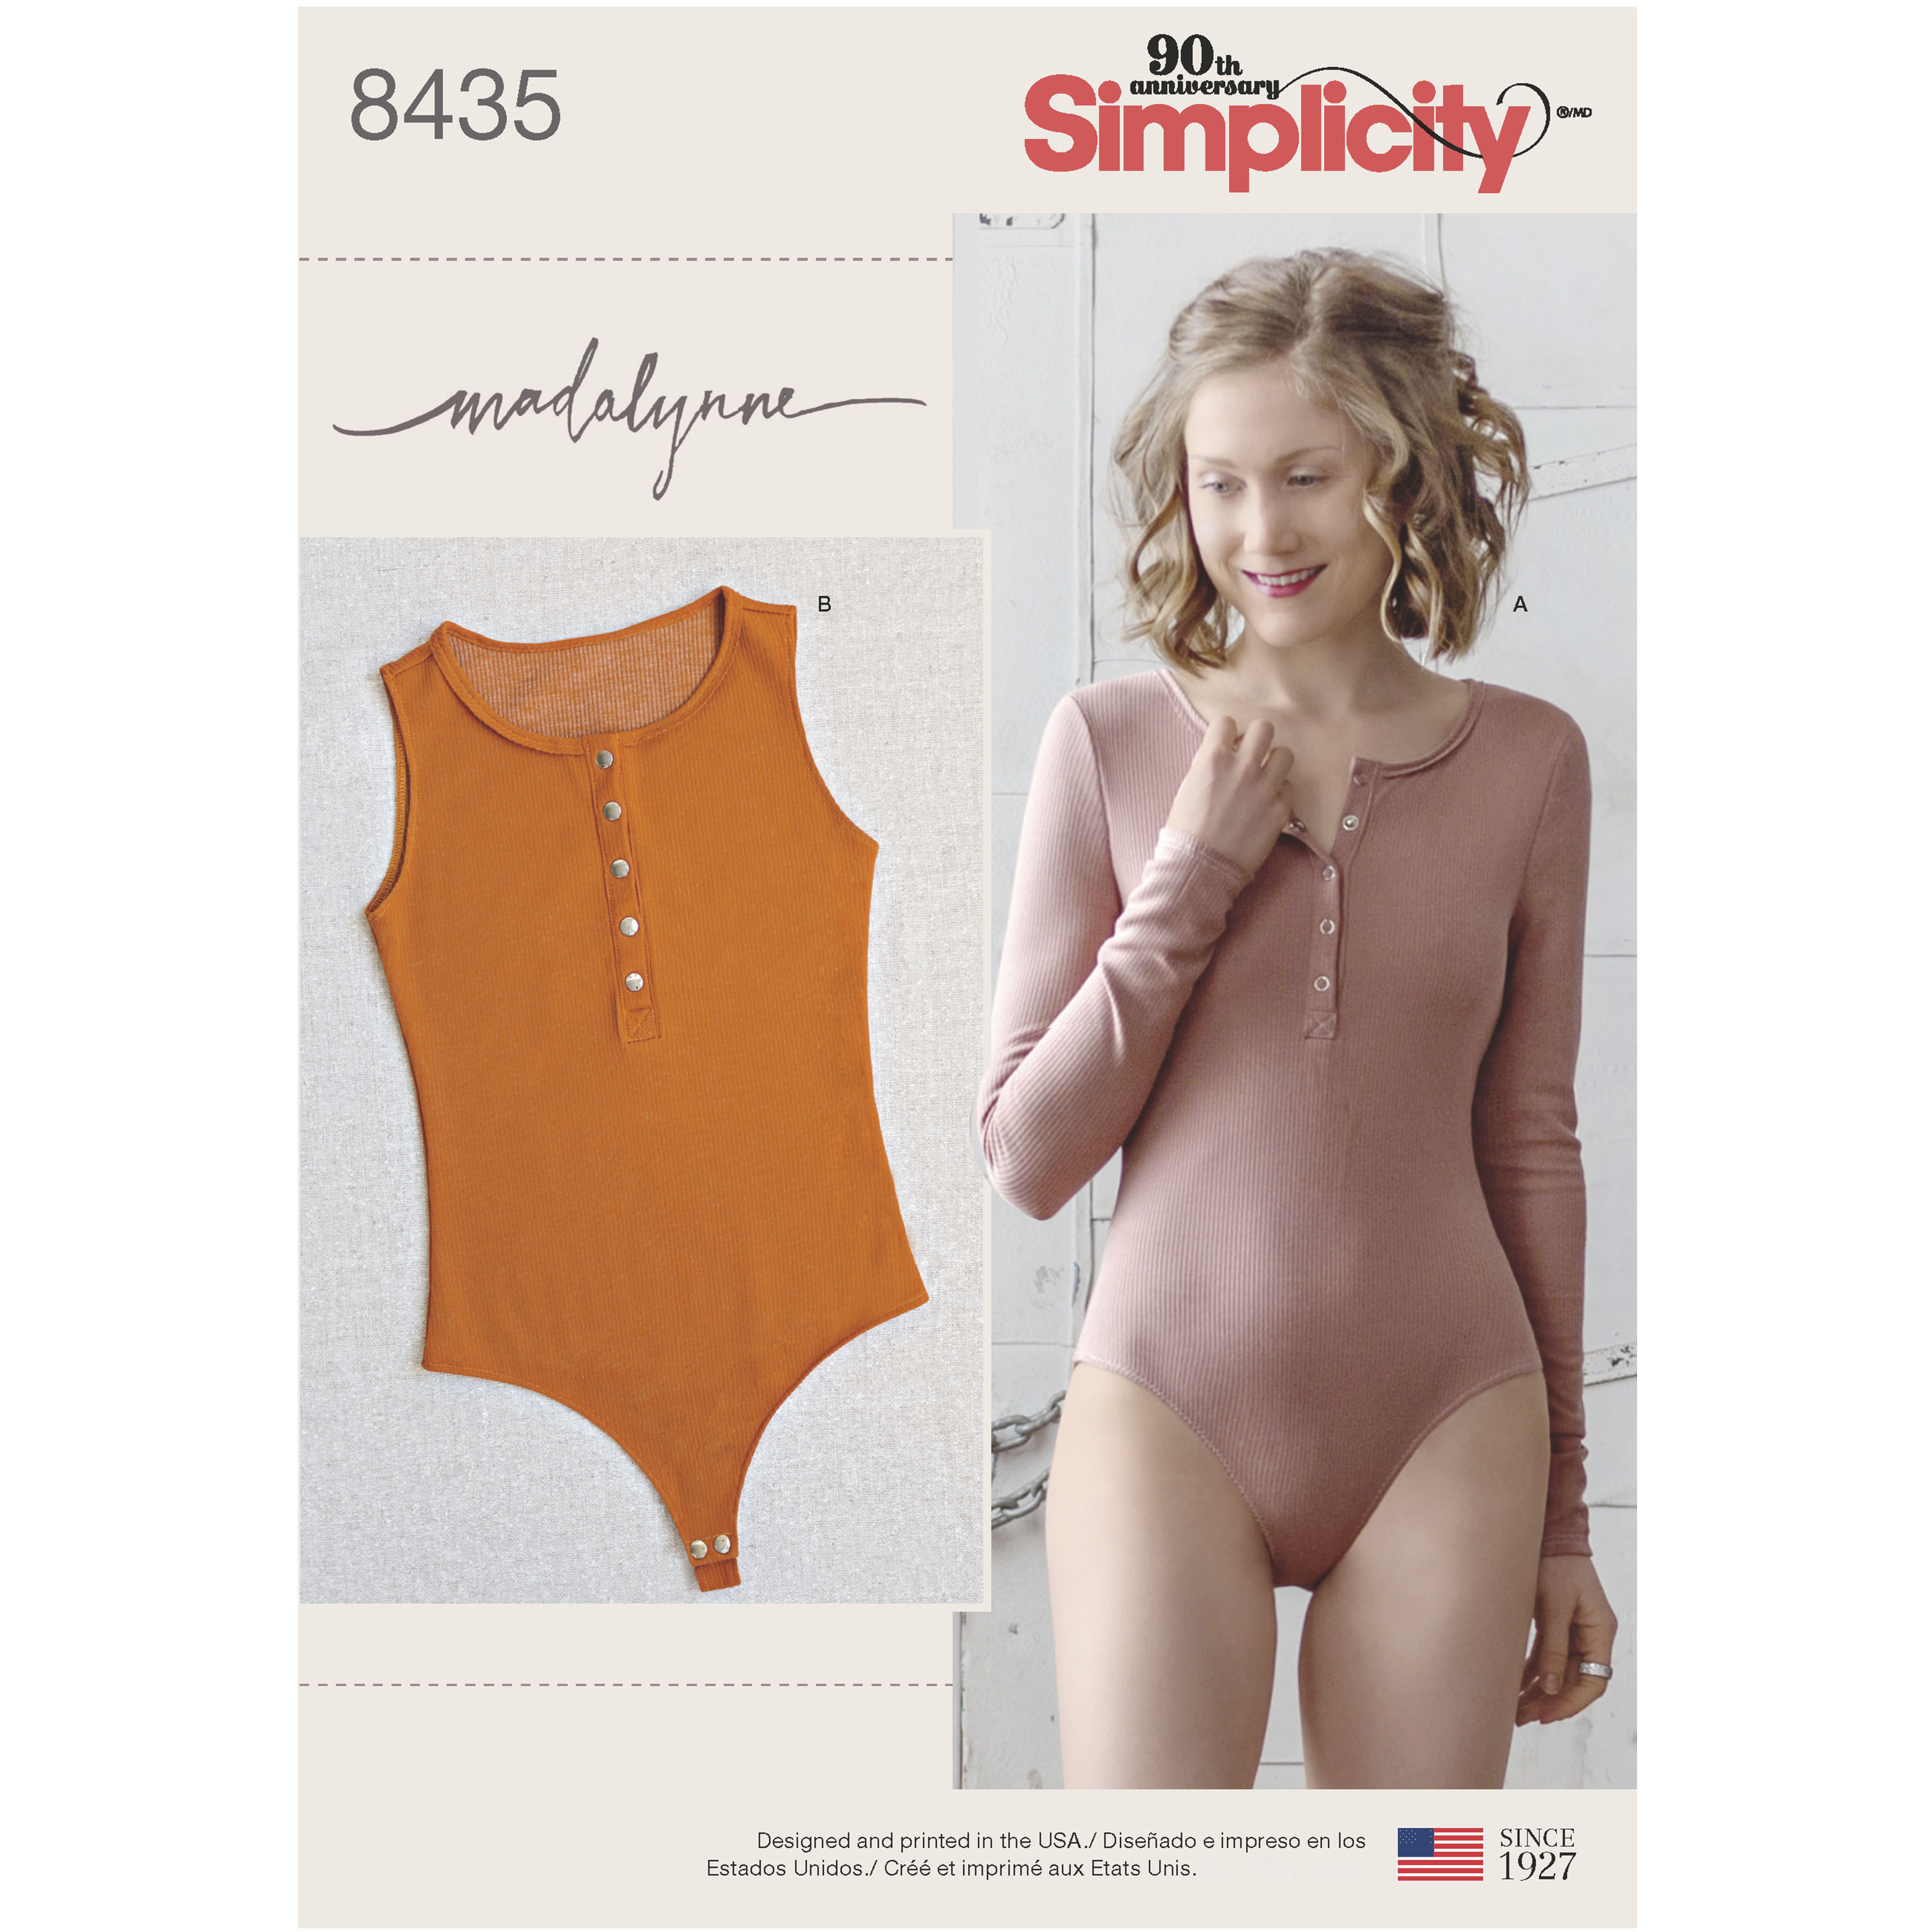 Simplicity 8435 Misses' Knit Bodysuit